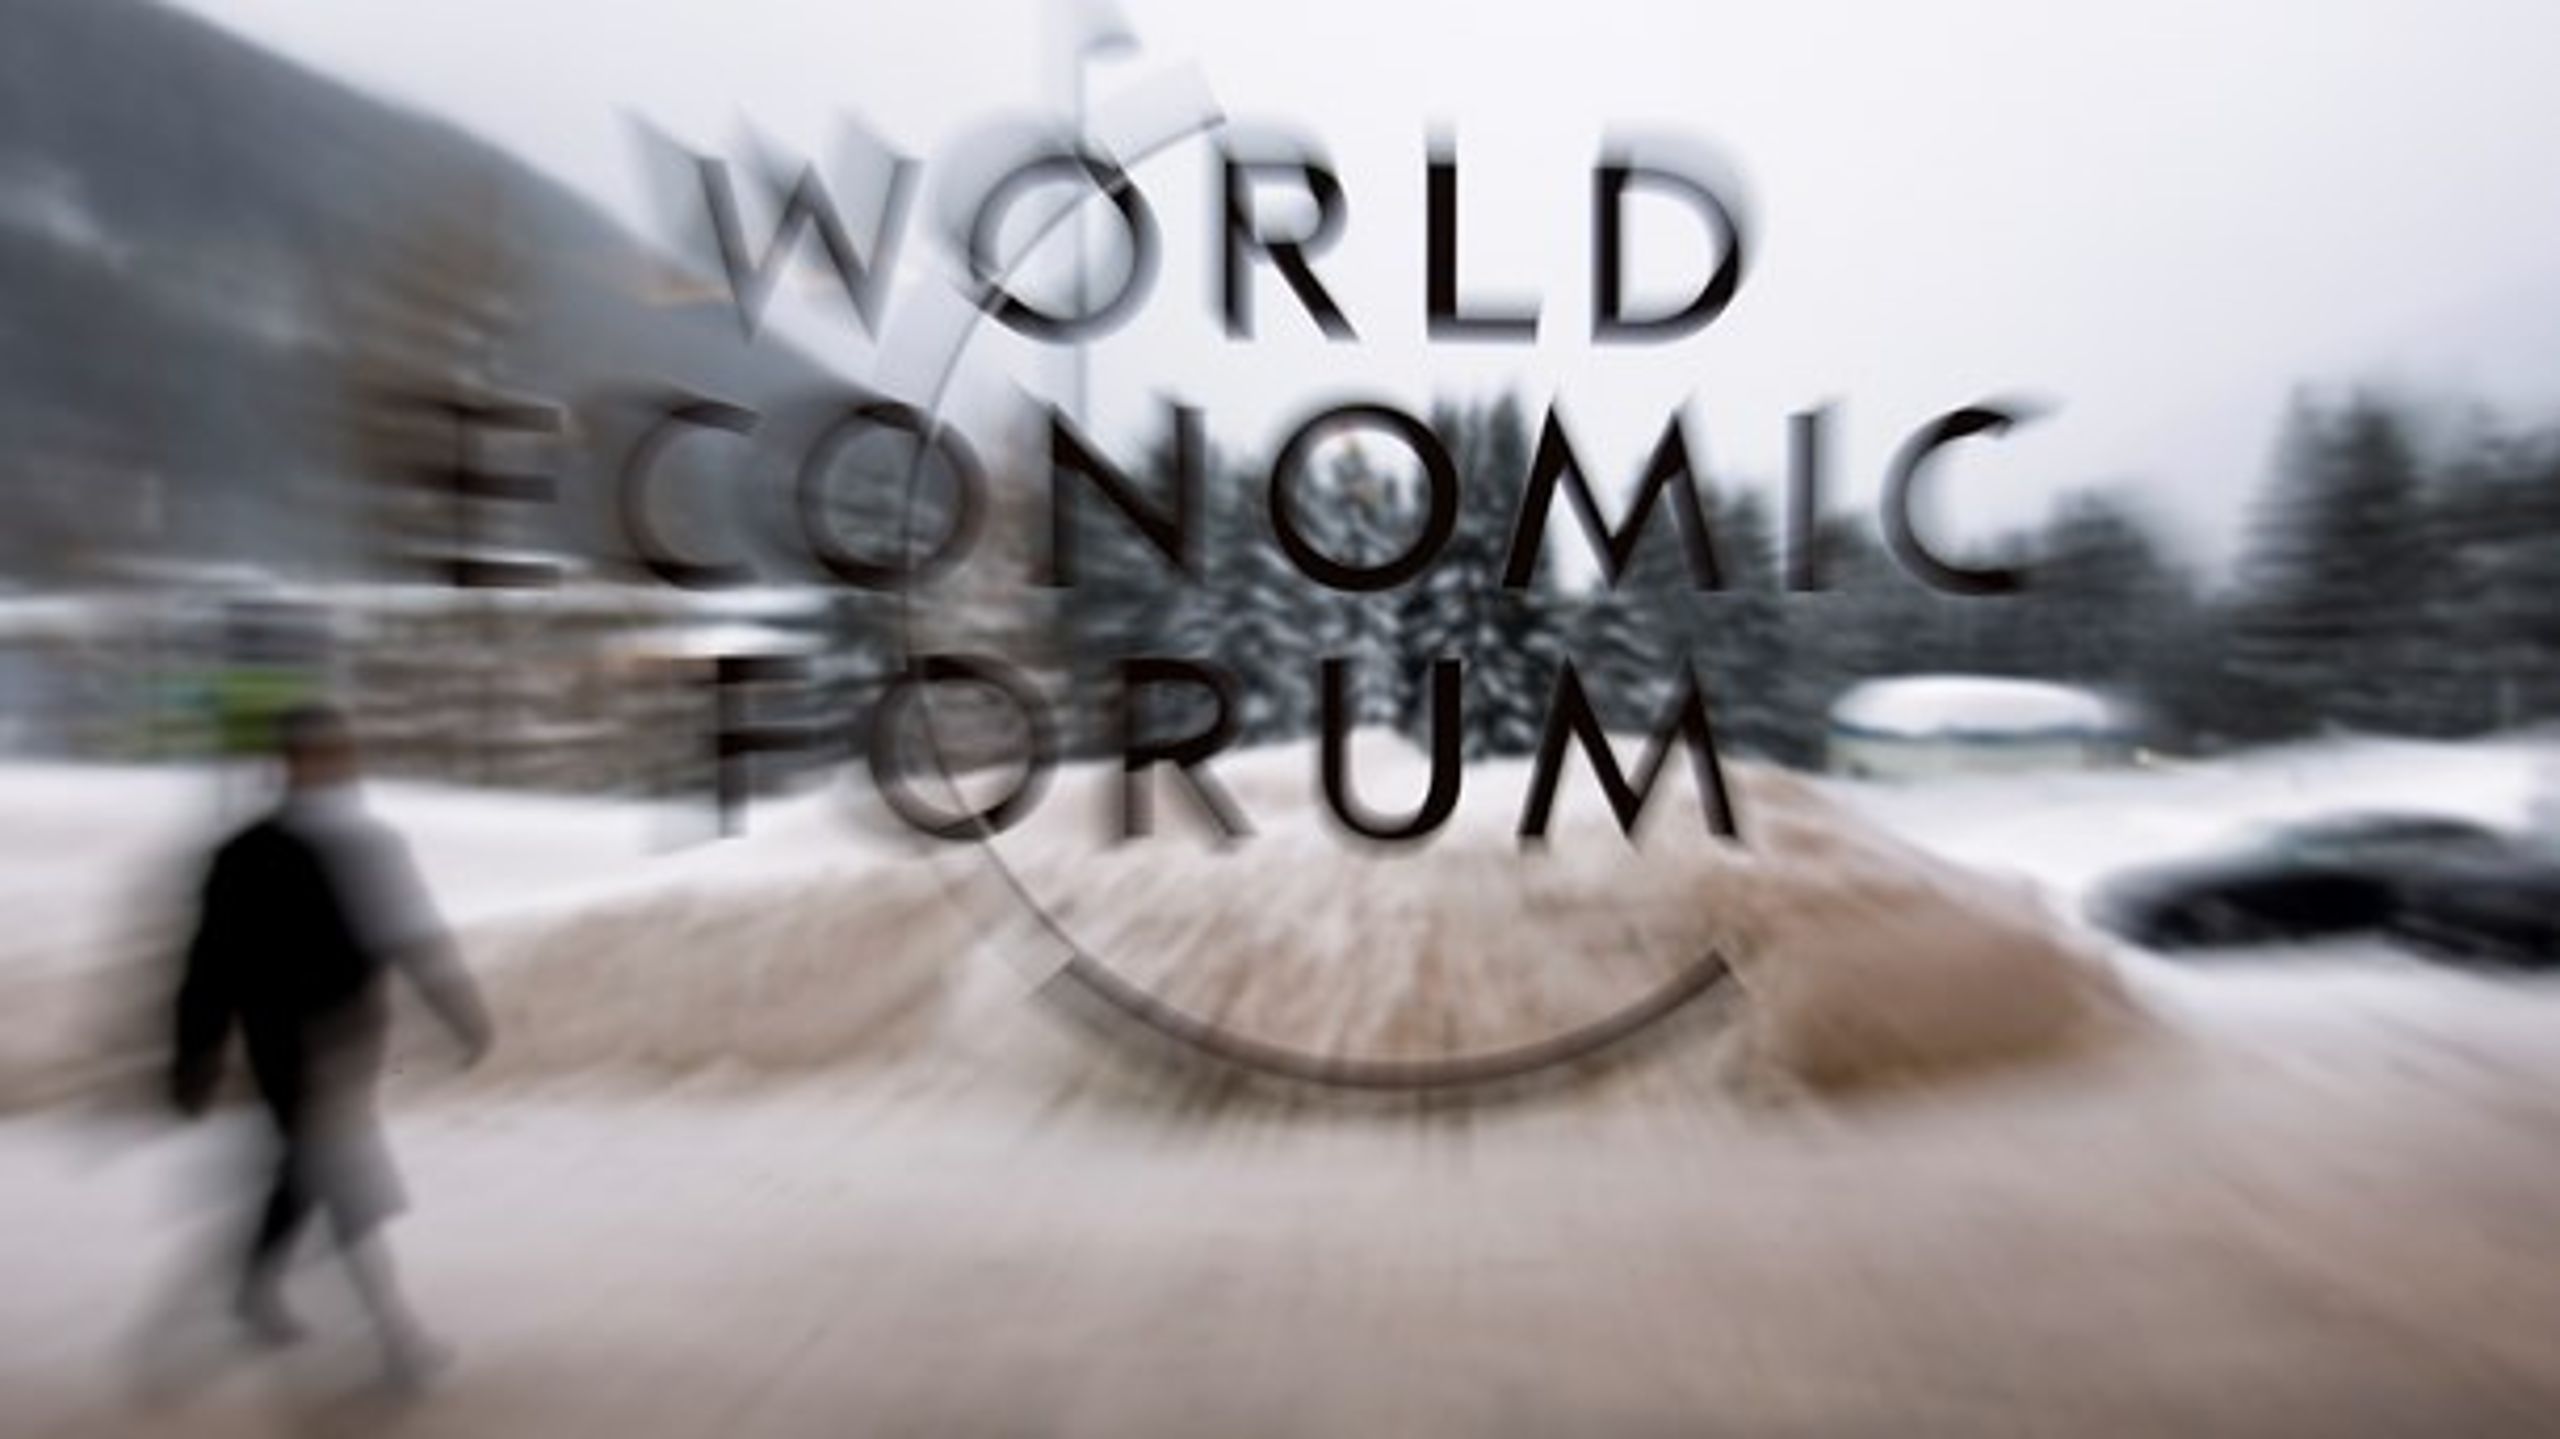 Forfatteren Anand Giridharadas har skrevet en bog efter at have fulgt med på verdens topmøder, blandt andet World Economic Forums årlige samling af statsledere i Davos.&nbsp;